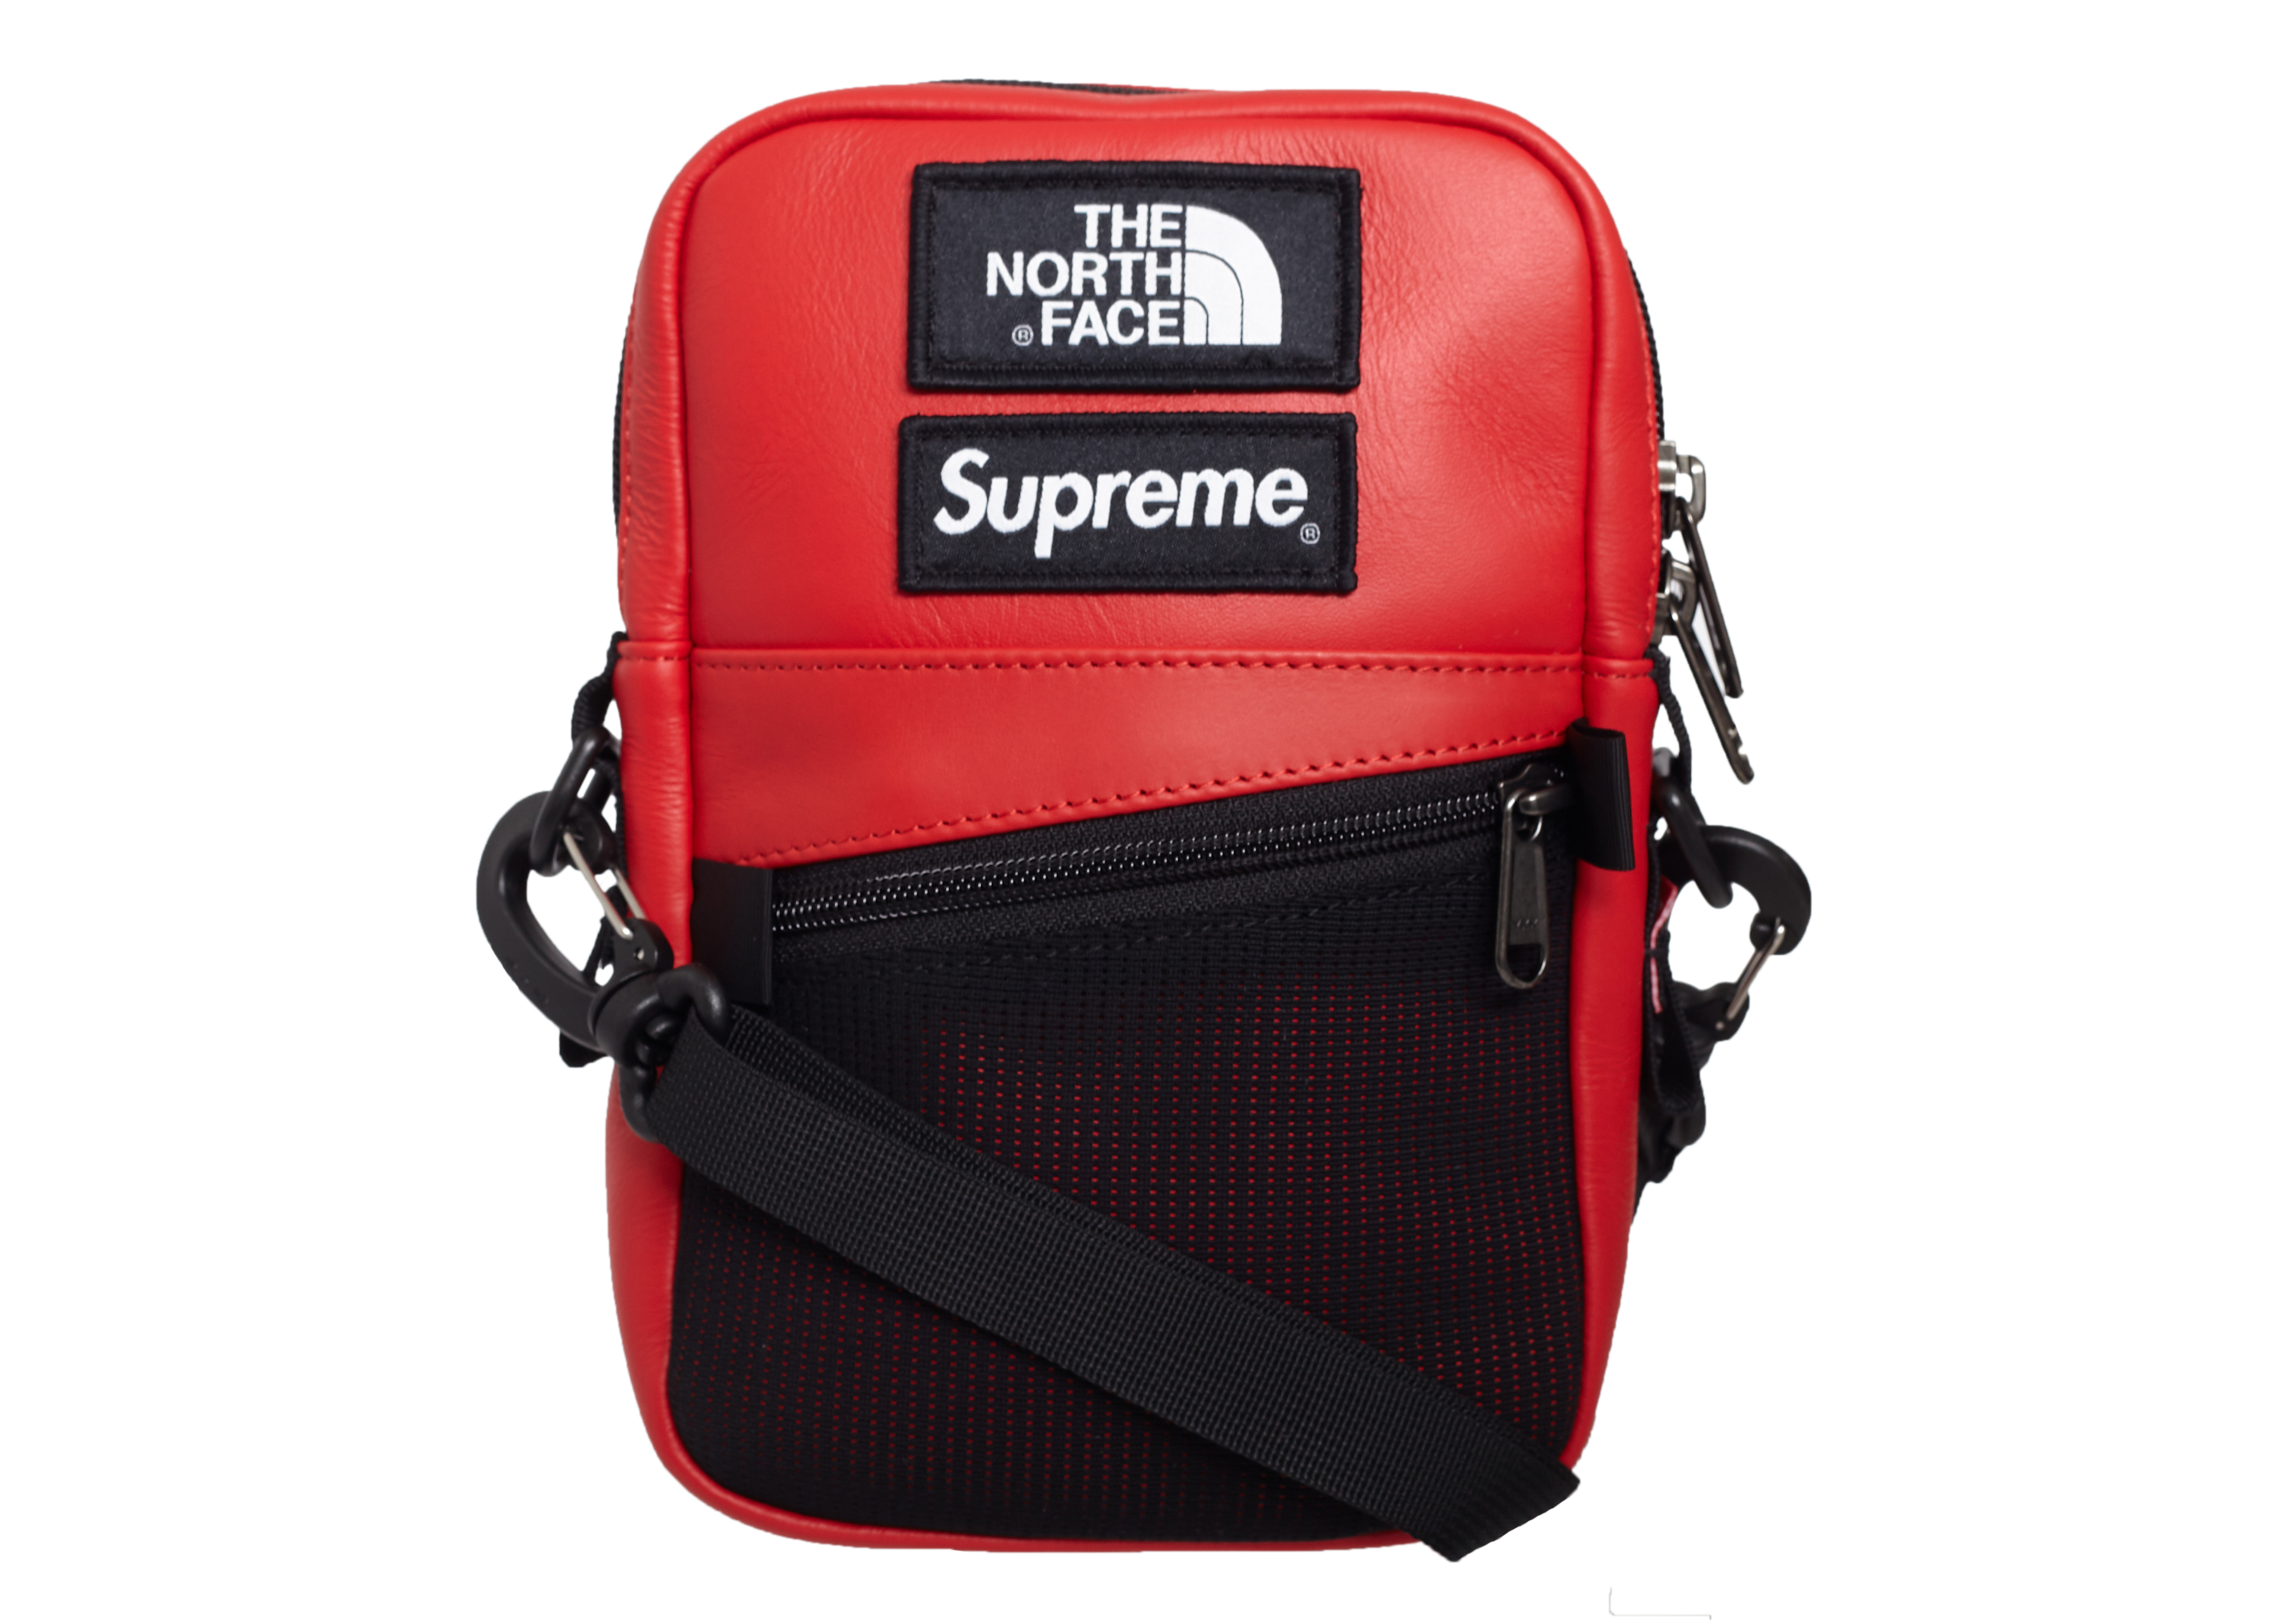 Supreme TNF Leather Shoulder Bag